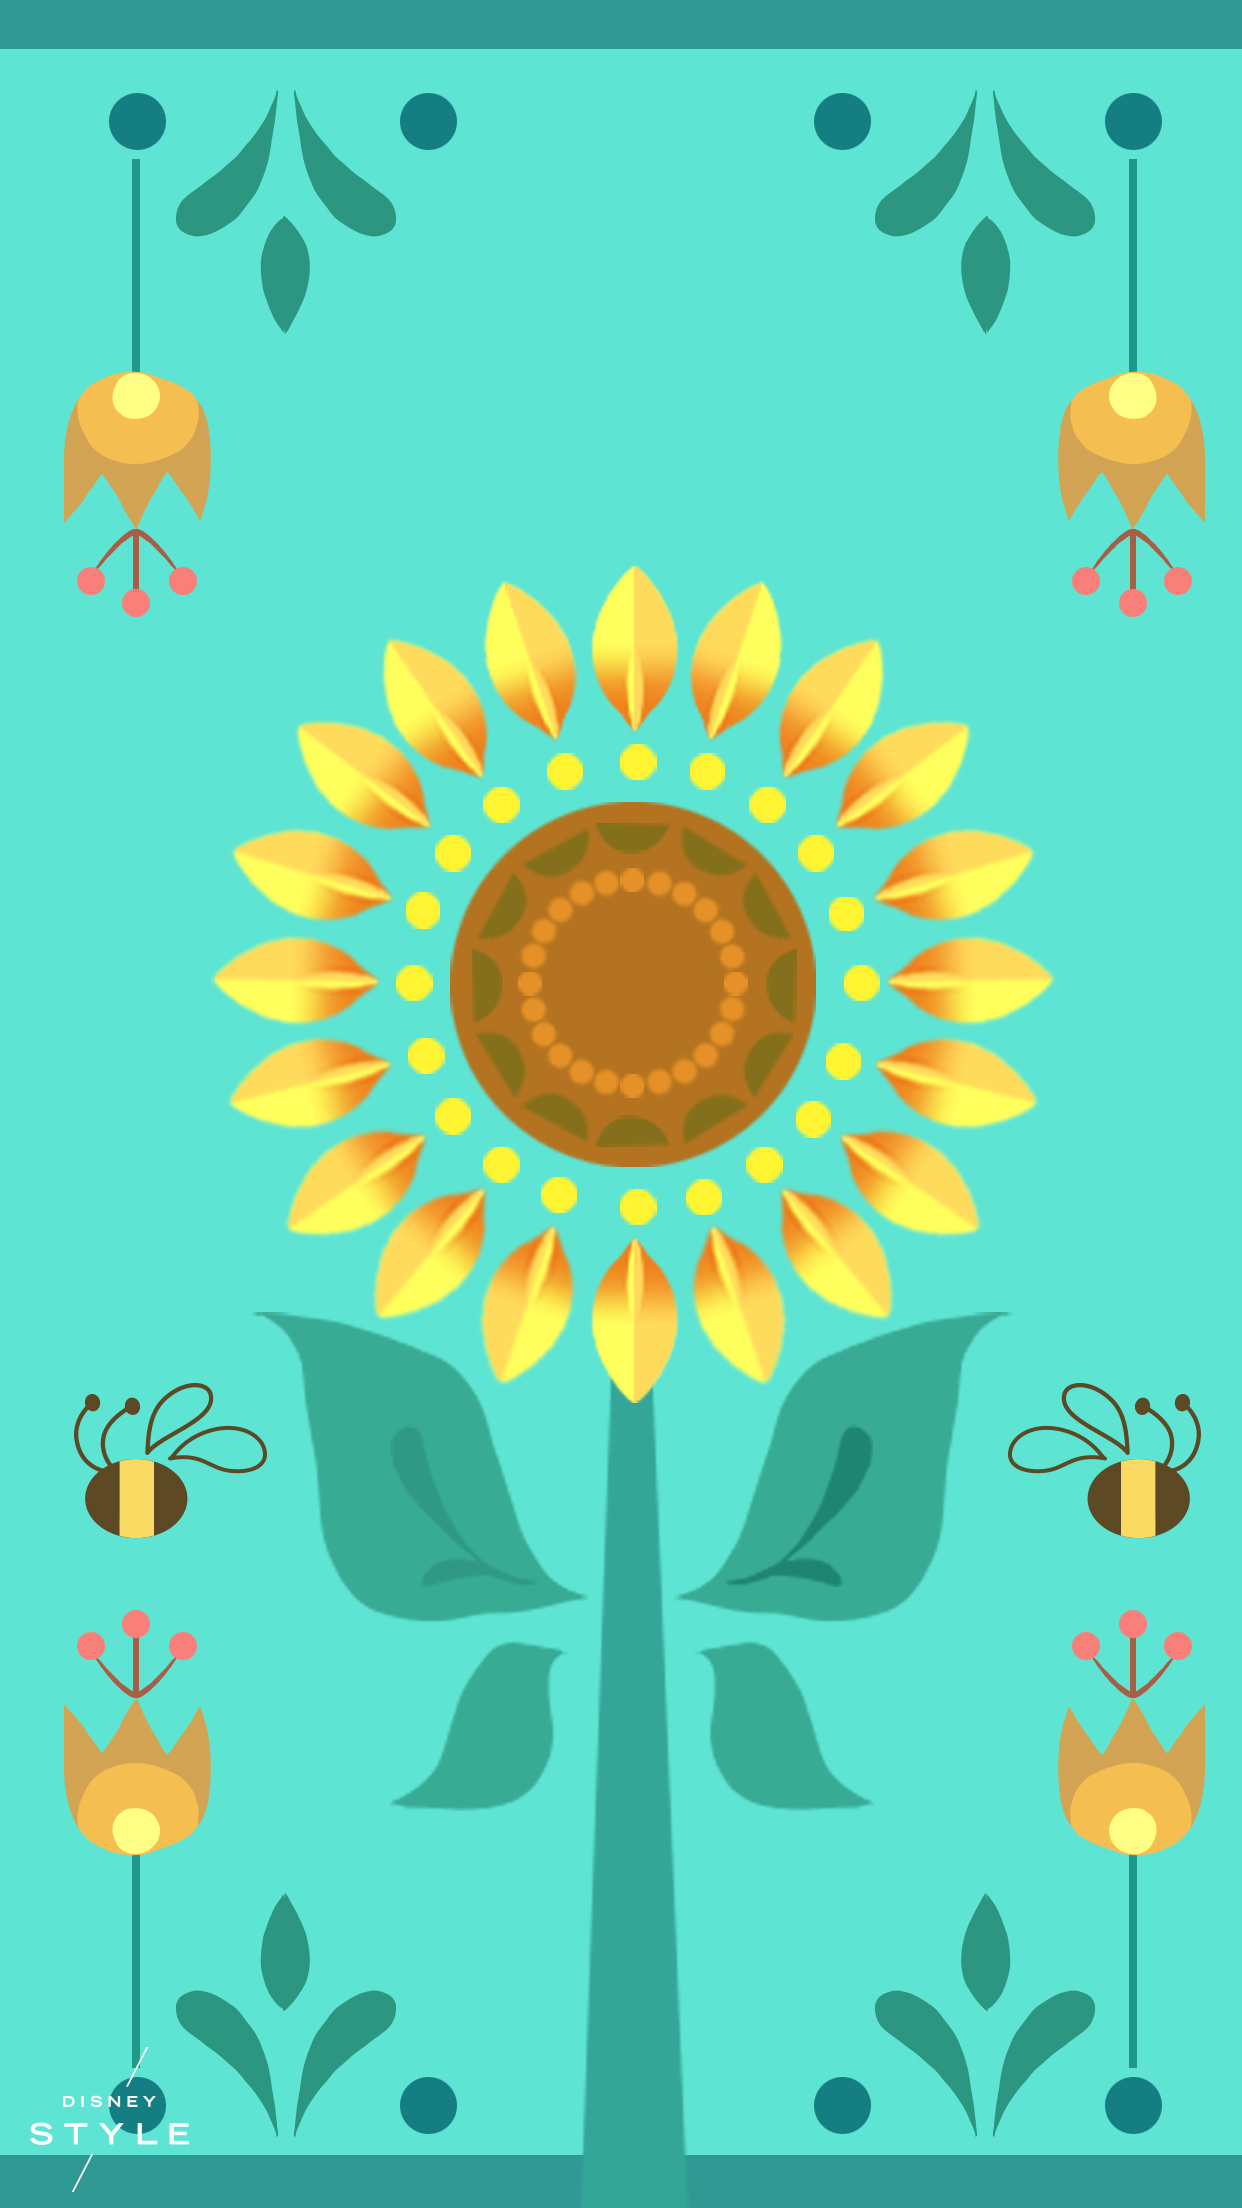 papel pintado de estilo disney,girasol,amarillo,girasol,turquesa,flor